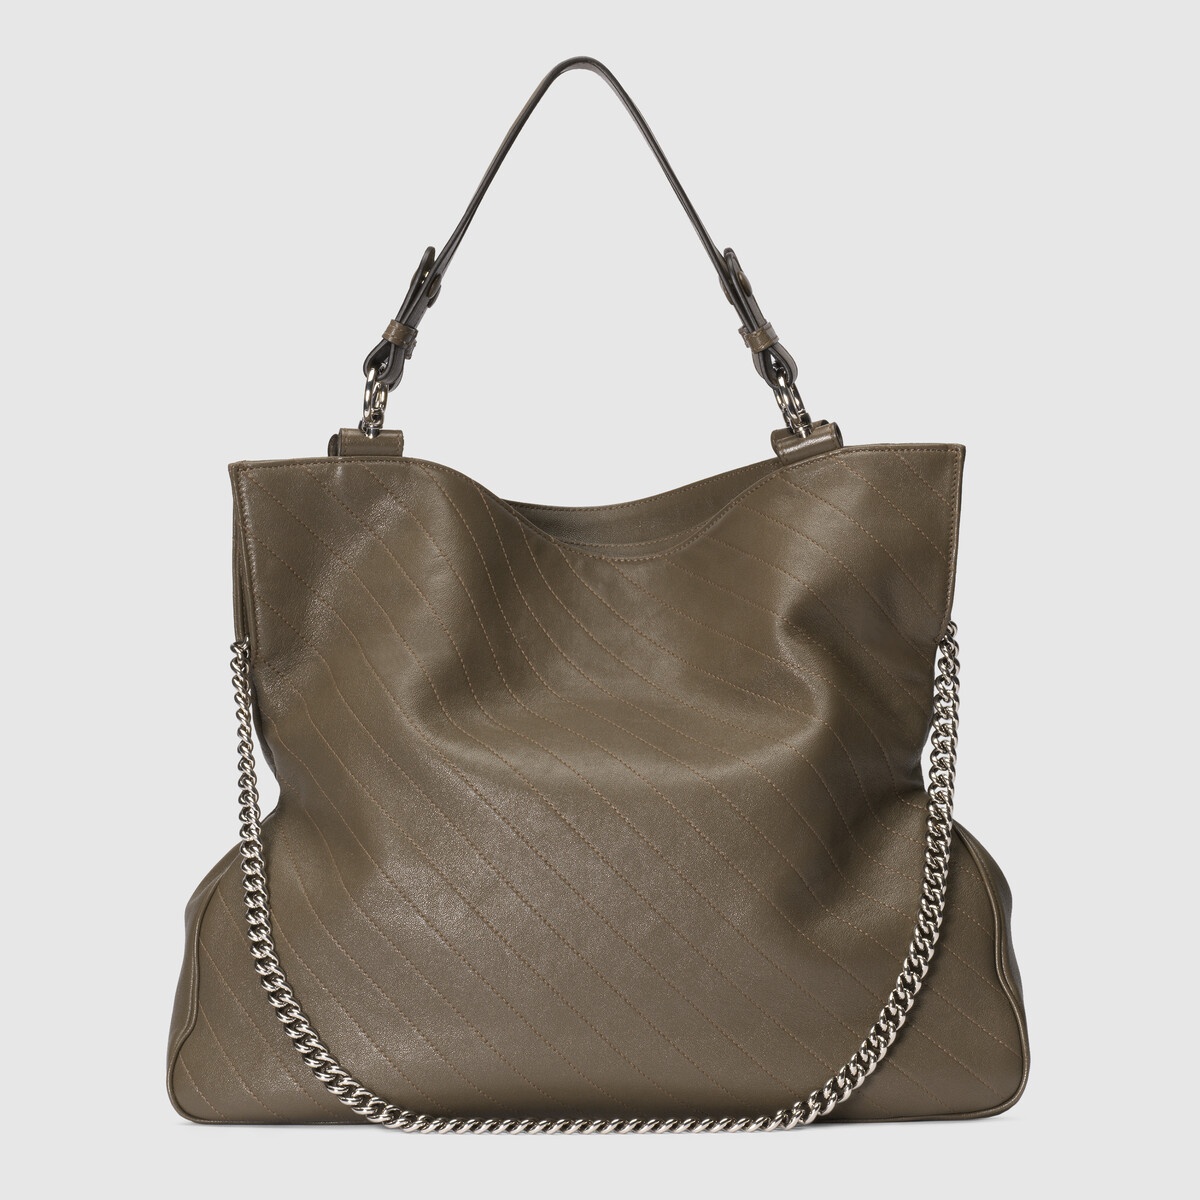 Blondie Medium leather tote bag